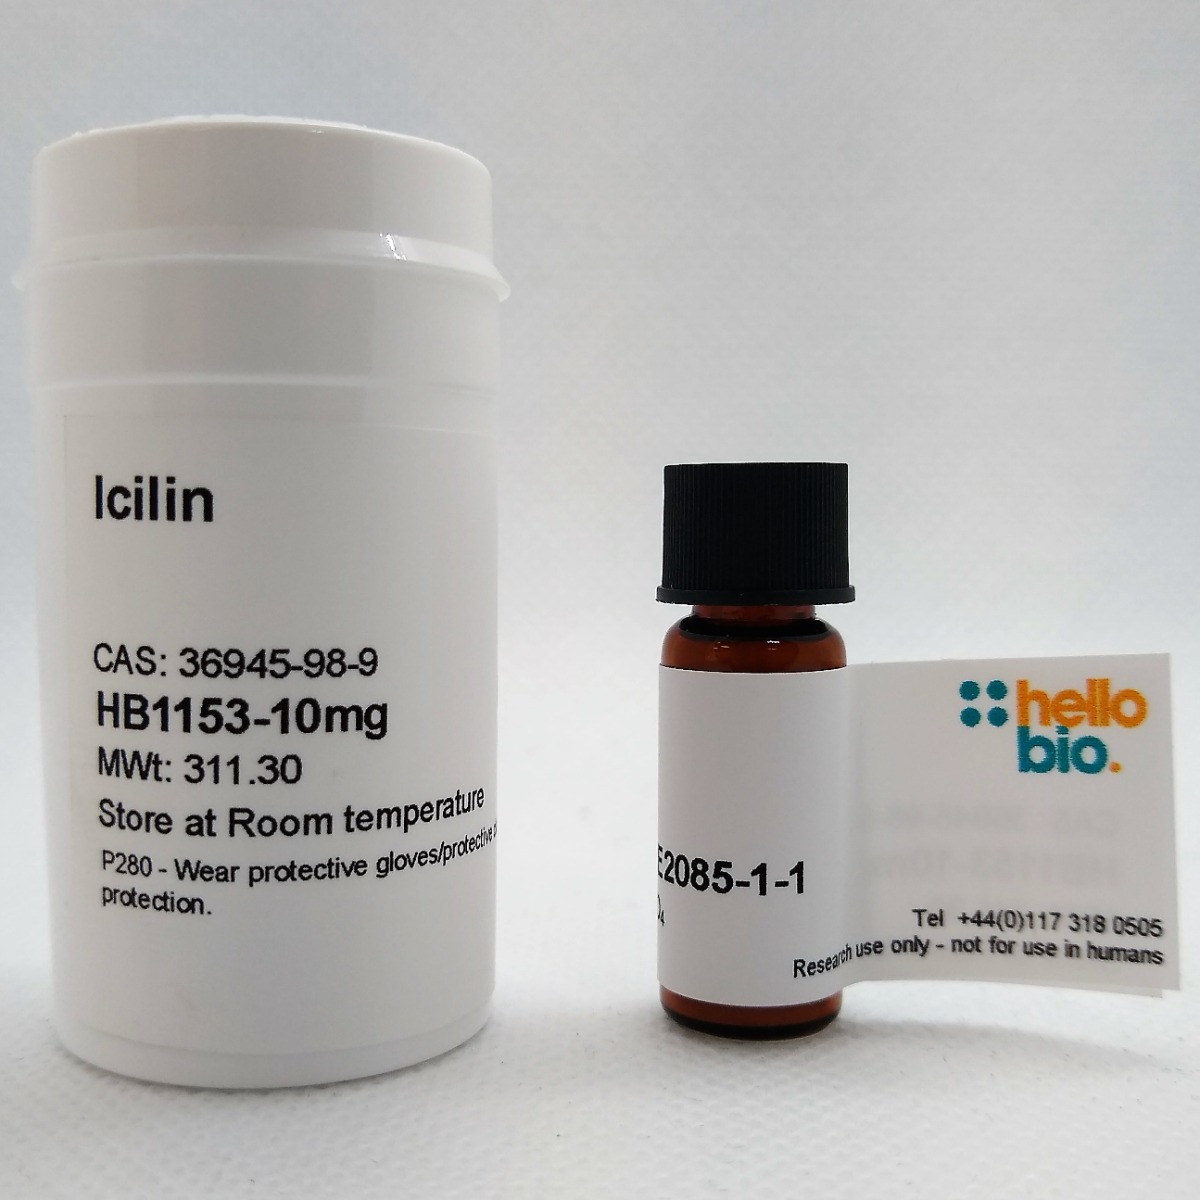 Icilin product vial image | Hello Bio